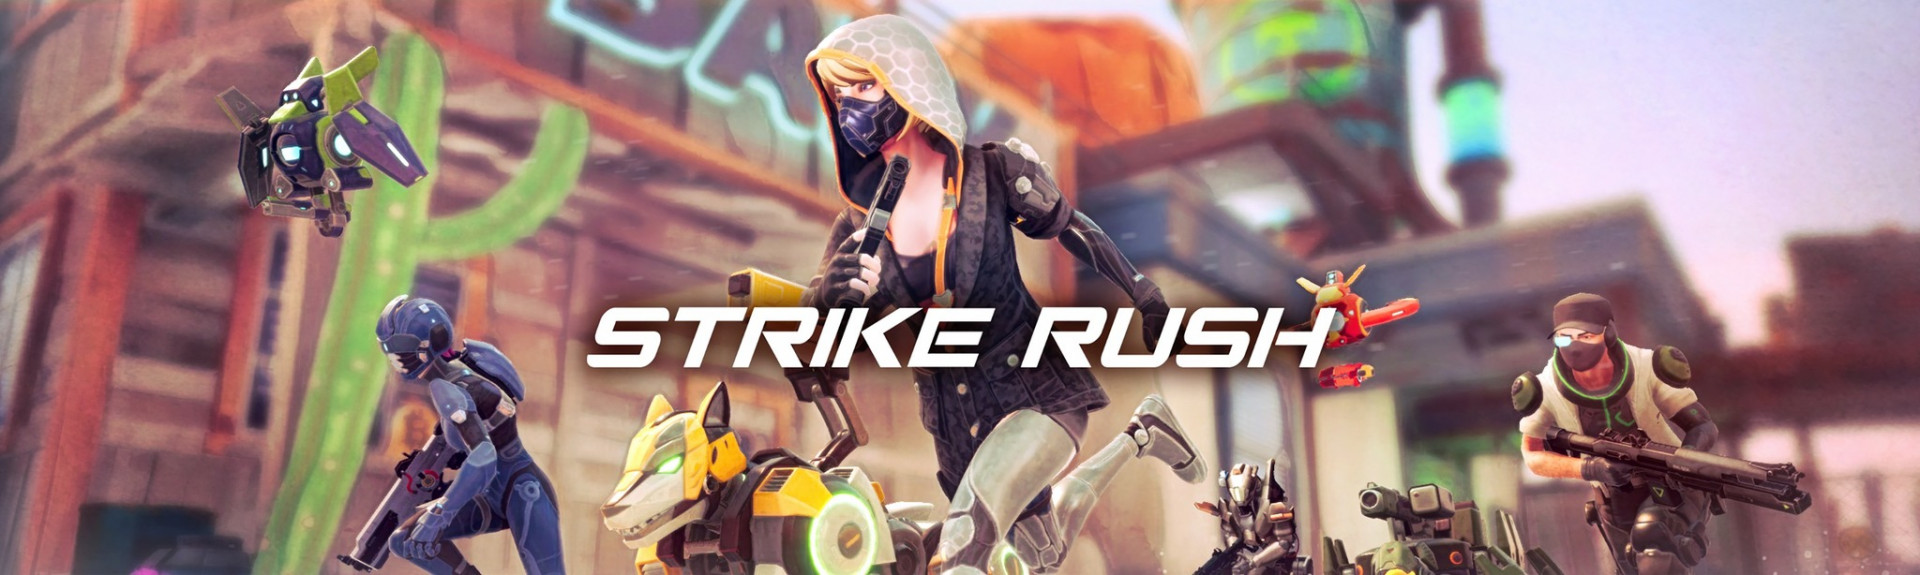 Strike Rush, acción 4 contra 4 este jueves en Meta Quest